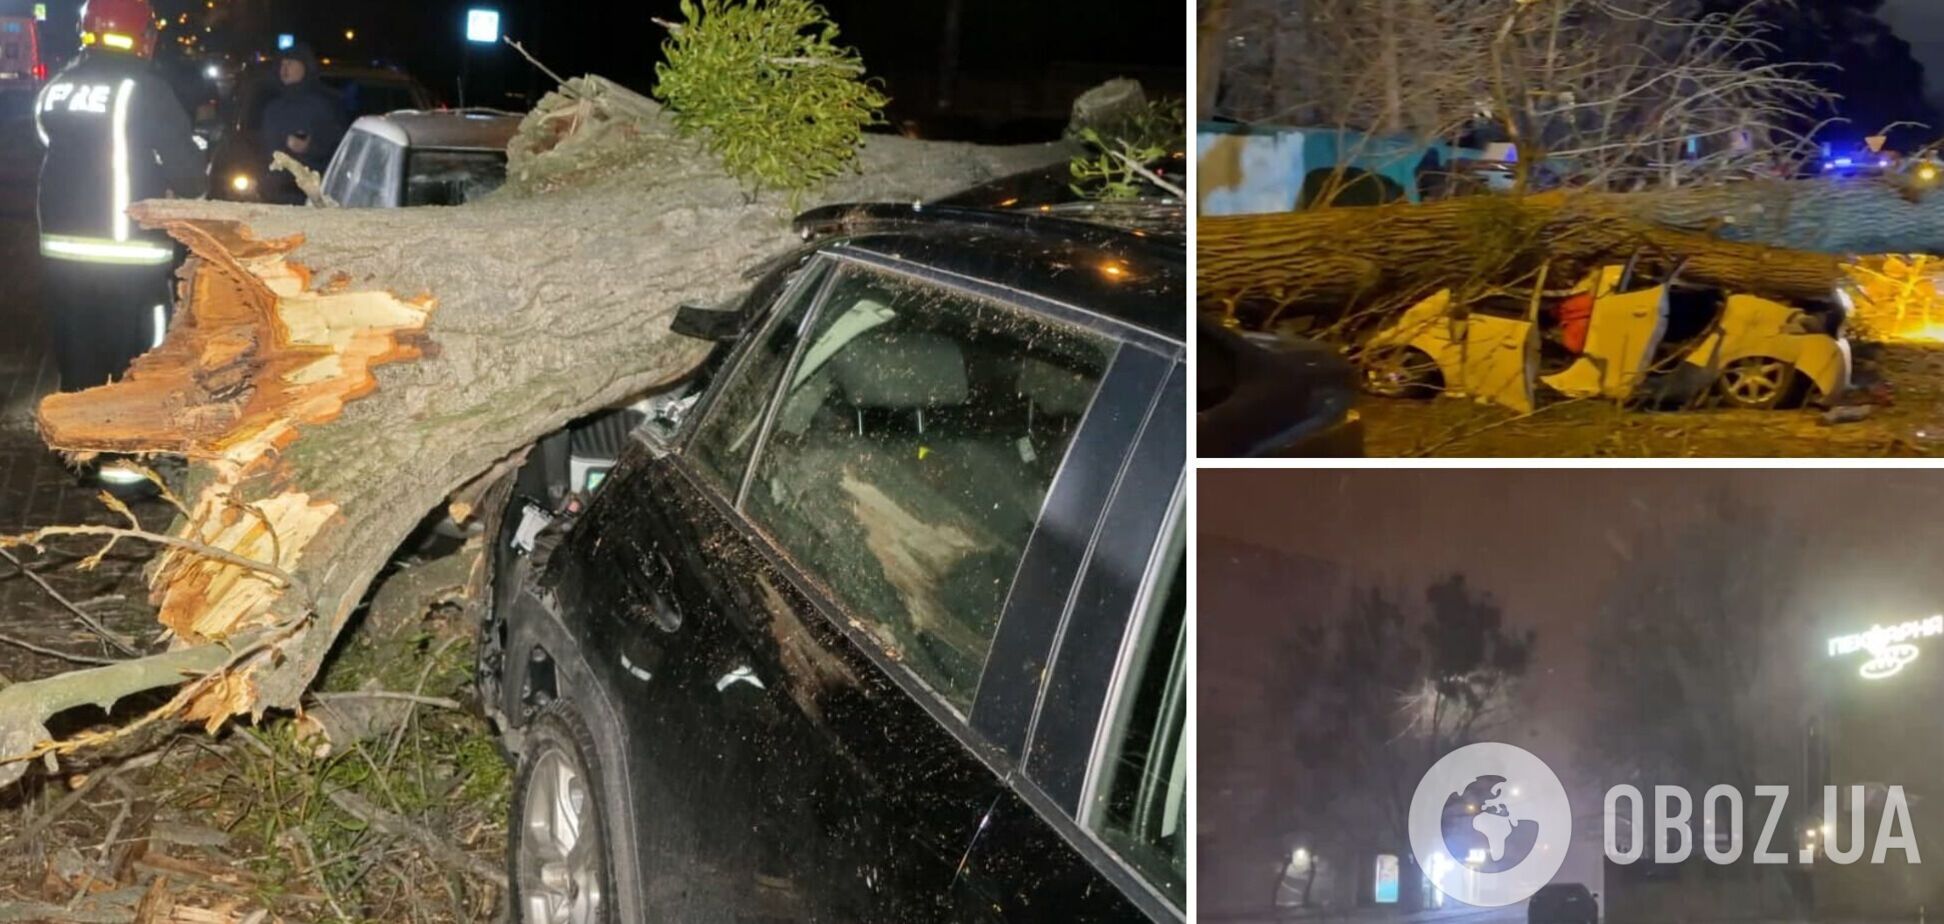 Ураганный ветер валил деревья, а в Киеве жертвой непогоды стал человек. Фото и видео